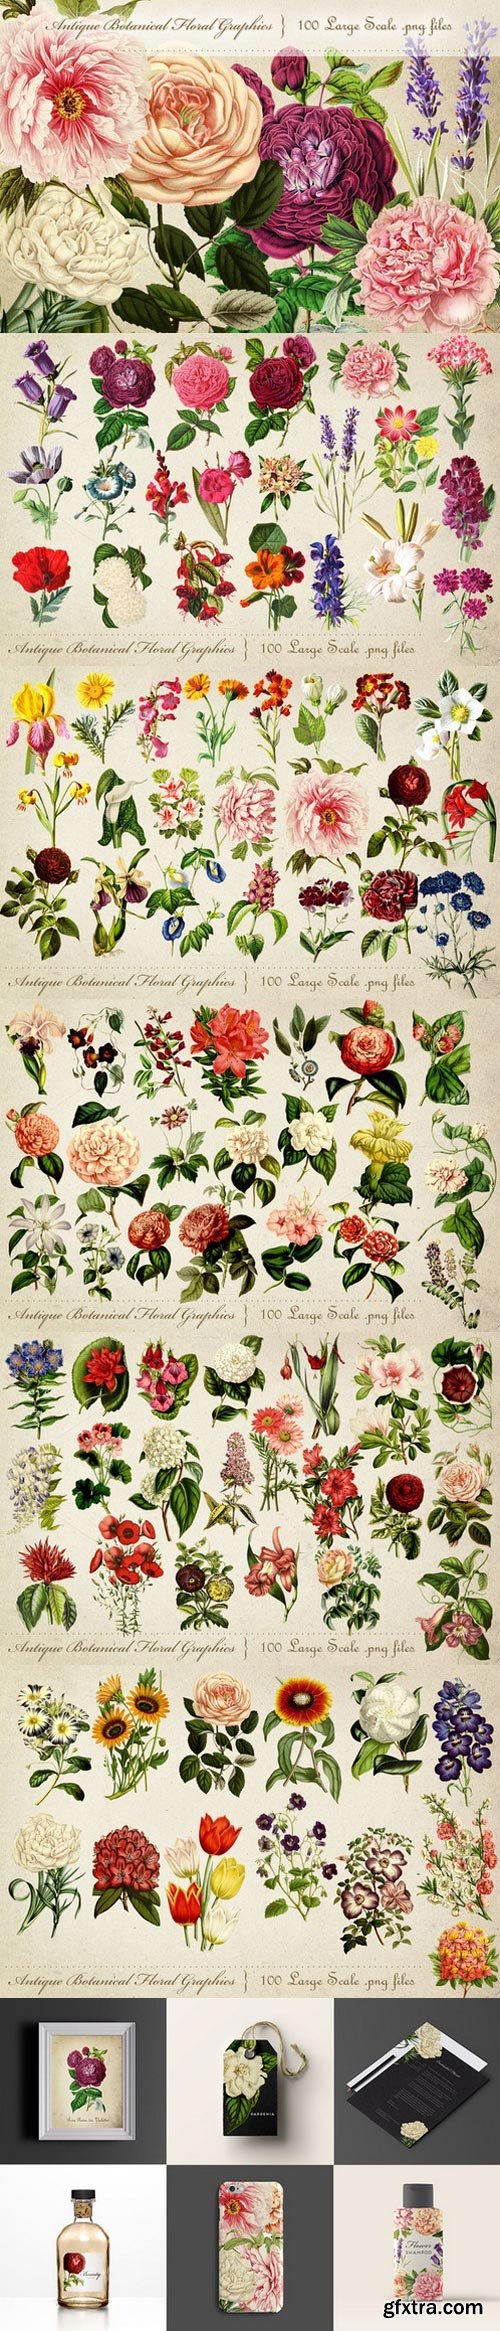 CM - Antique Botanical Floral Graphics 697852